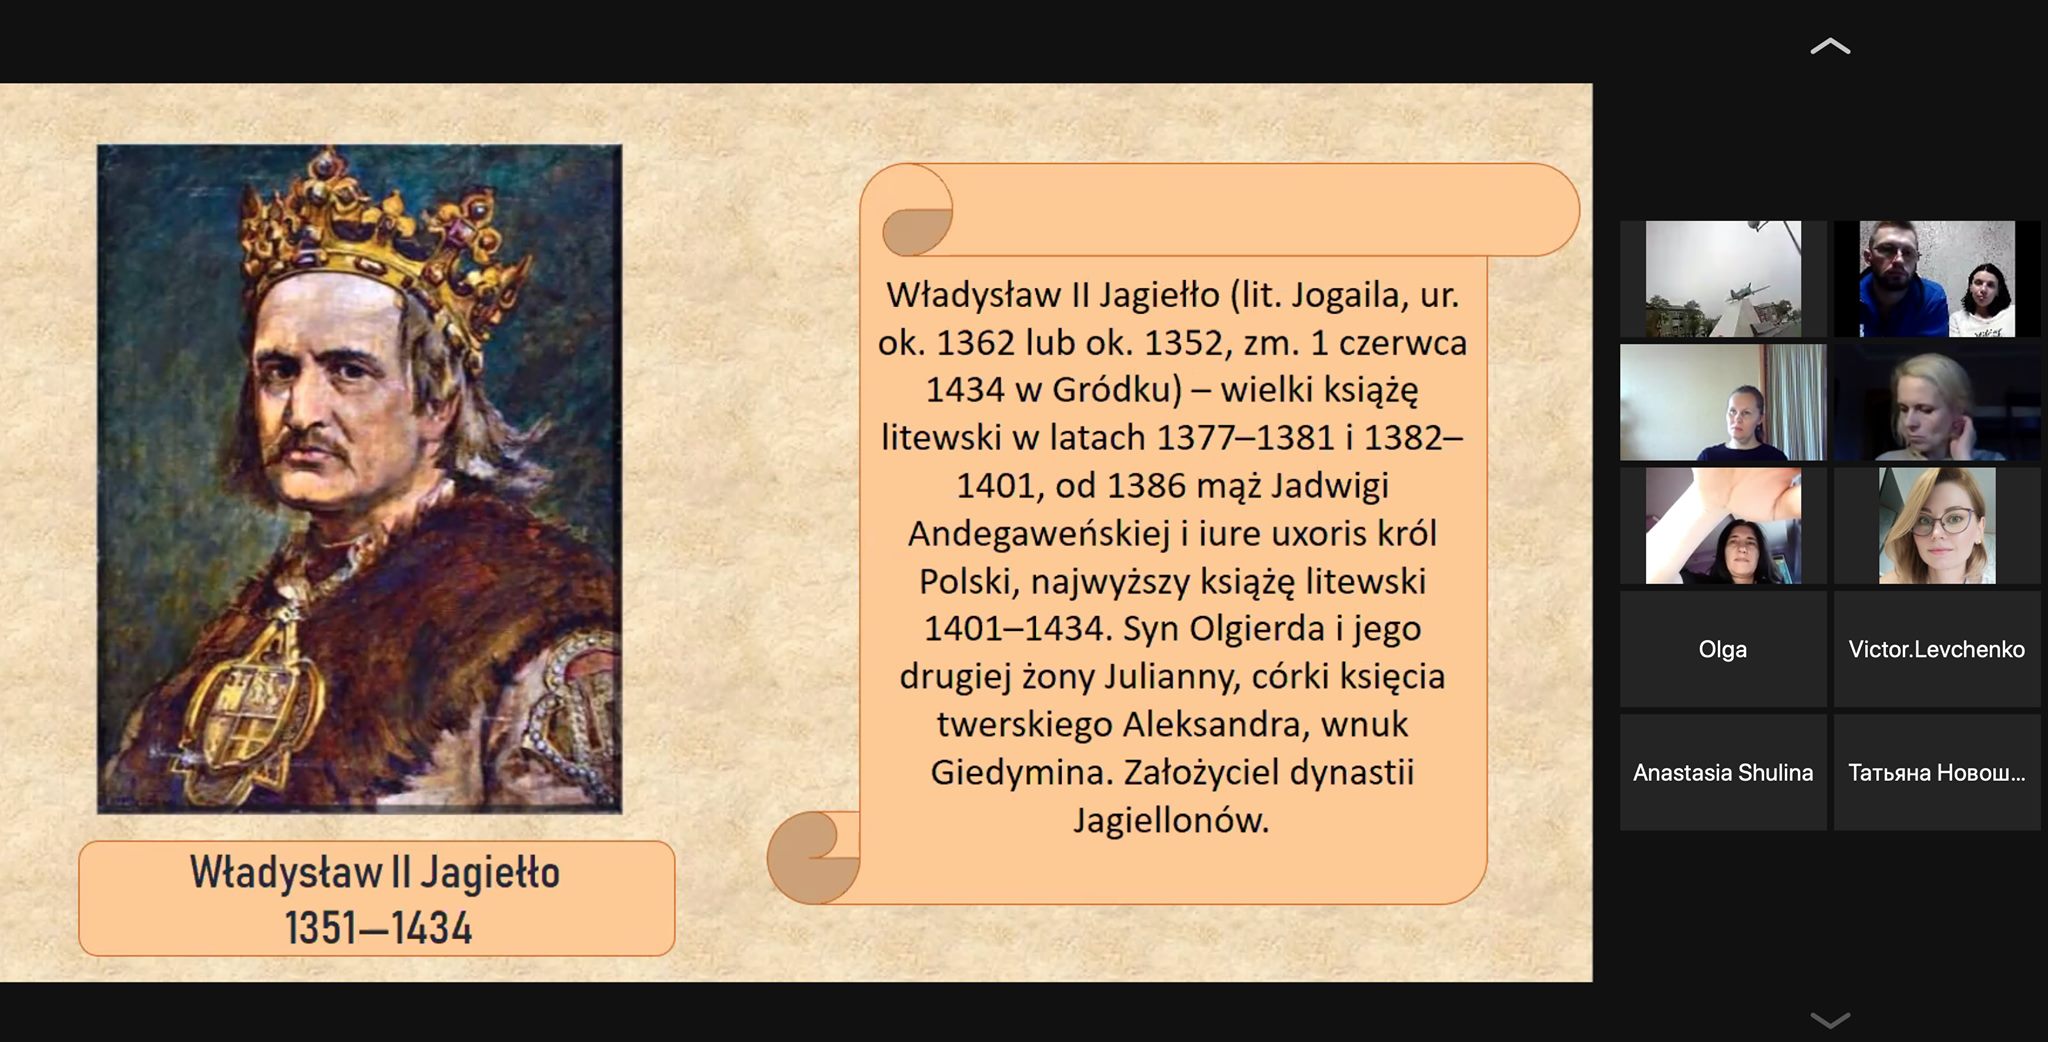 POLONIA:WEBINARS: династія Ягеллонів в культурному становленні Польщі